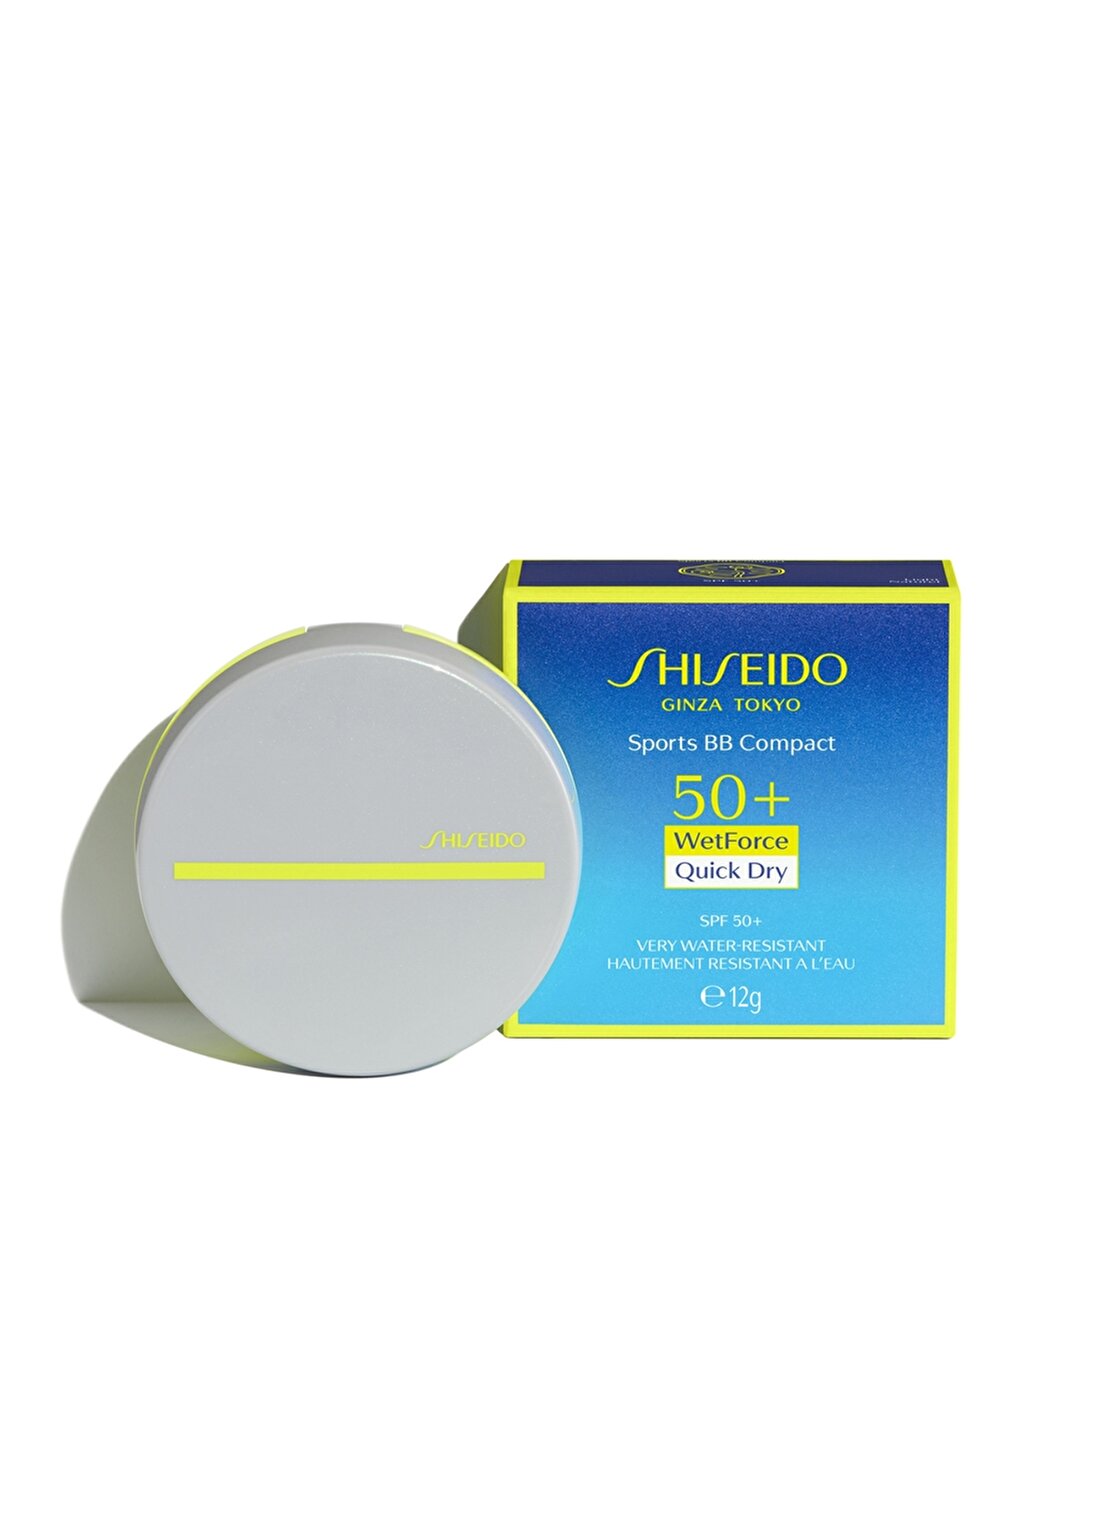 Shiseido Spf 50 Korumalı Suya Ve Tere Dayanıklı Bb Krem Medium Dark Güneş Ürünü